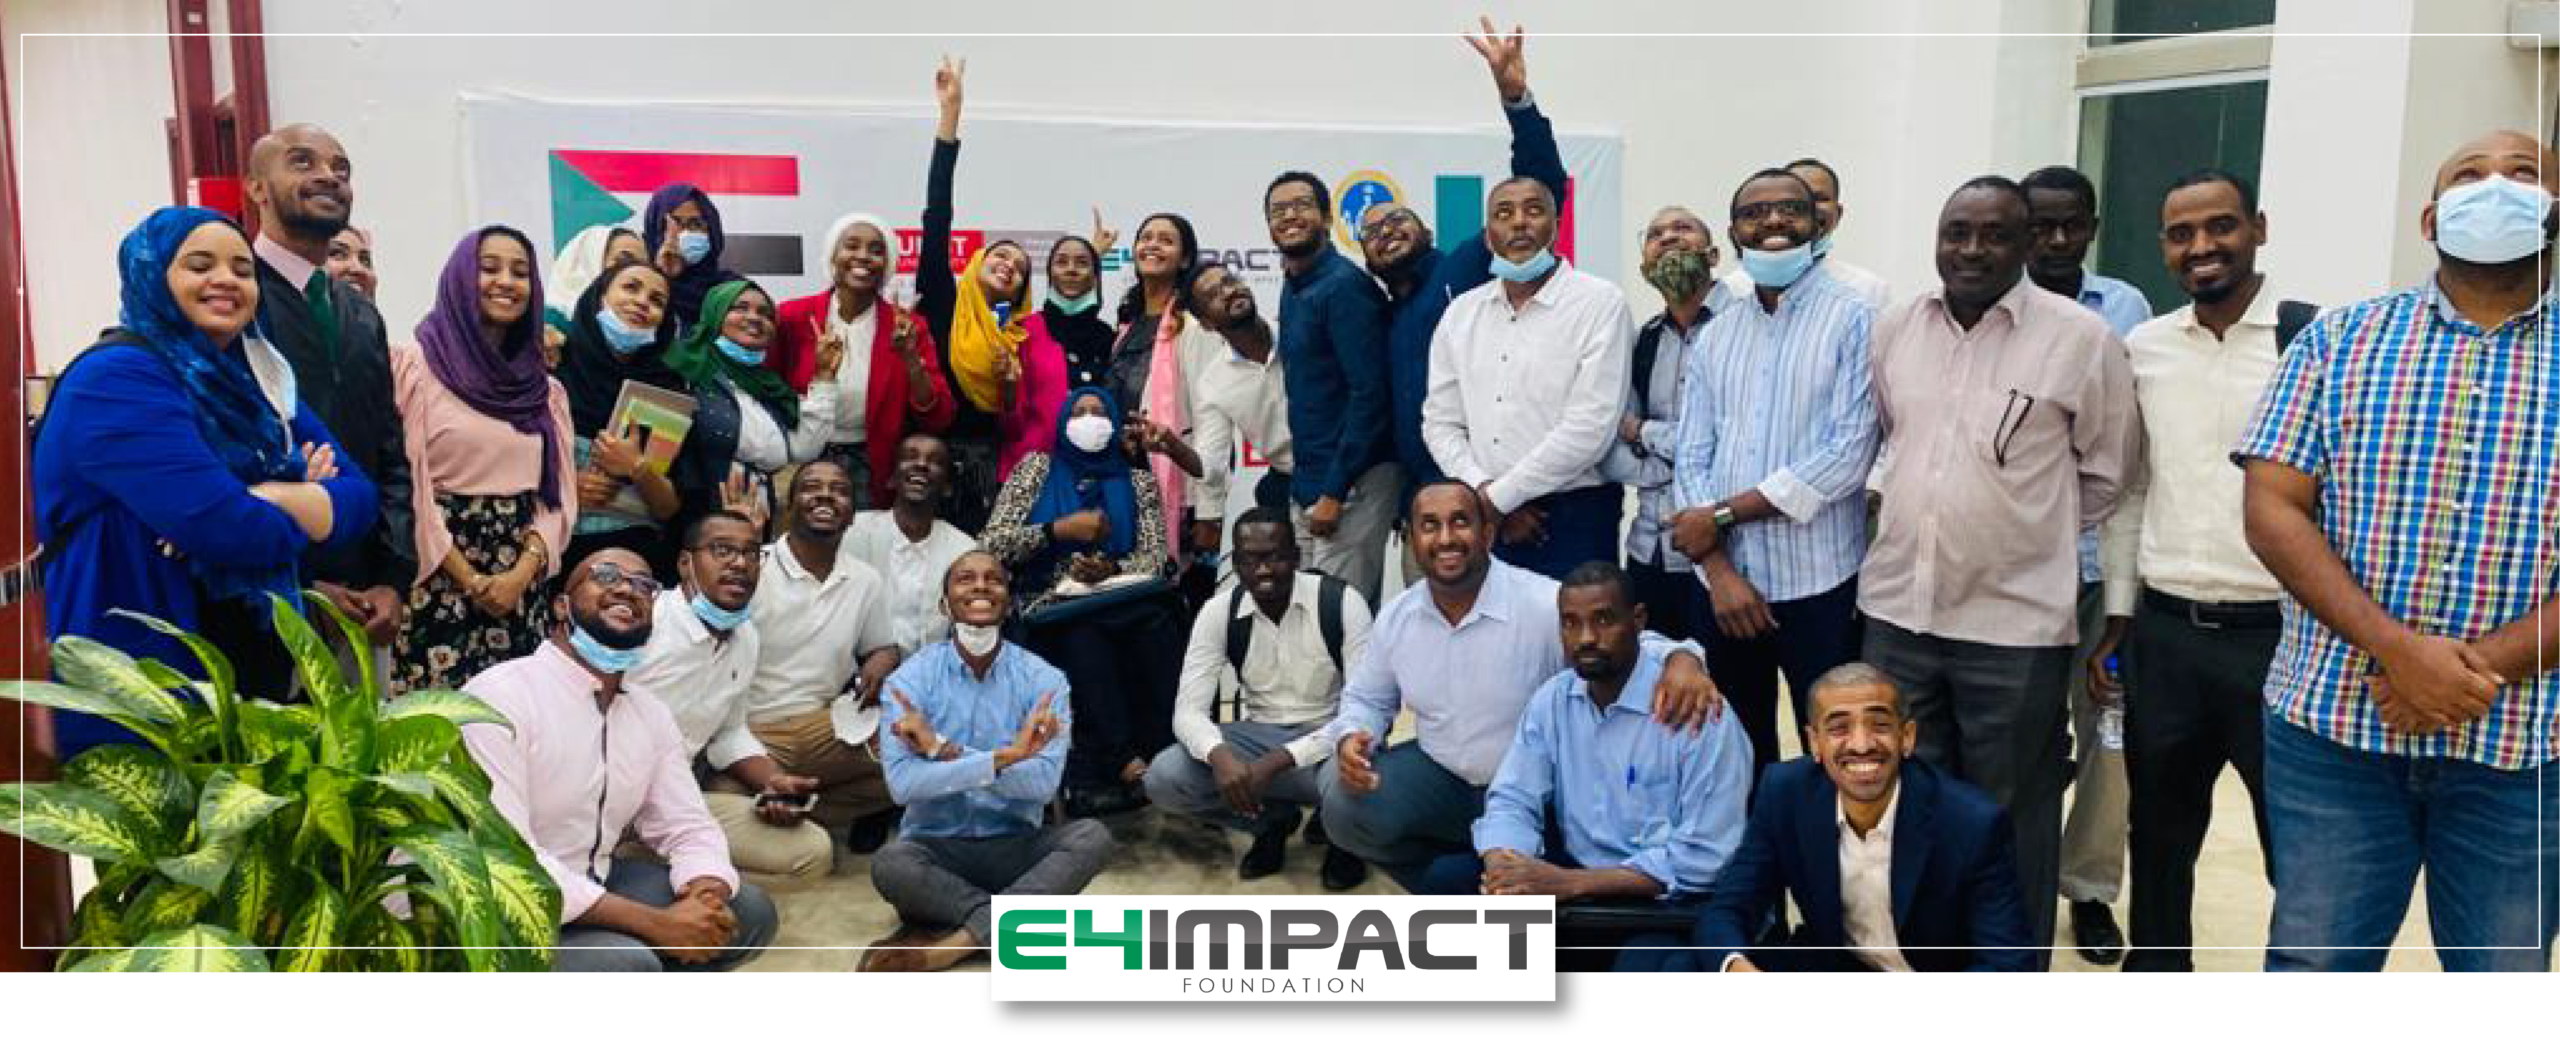 Entrepreneurship Sudan